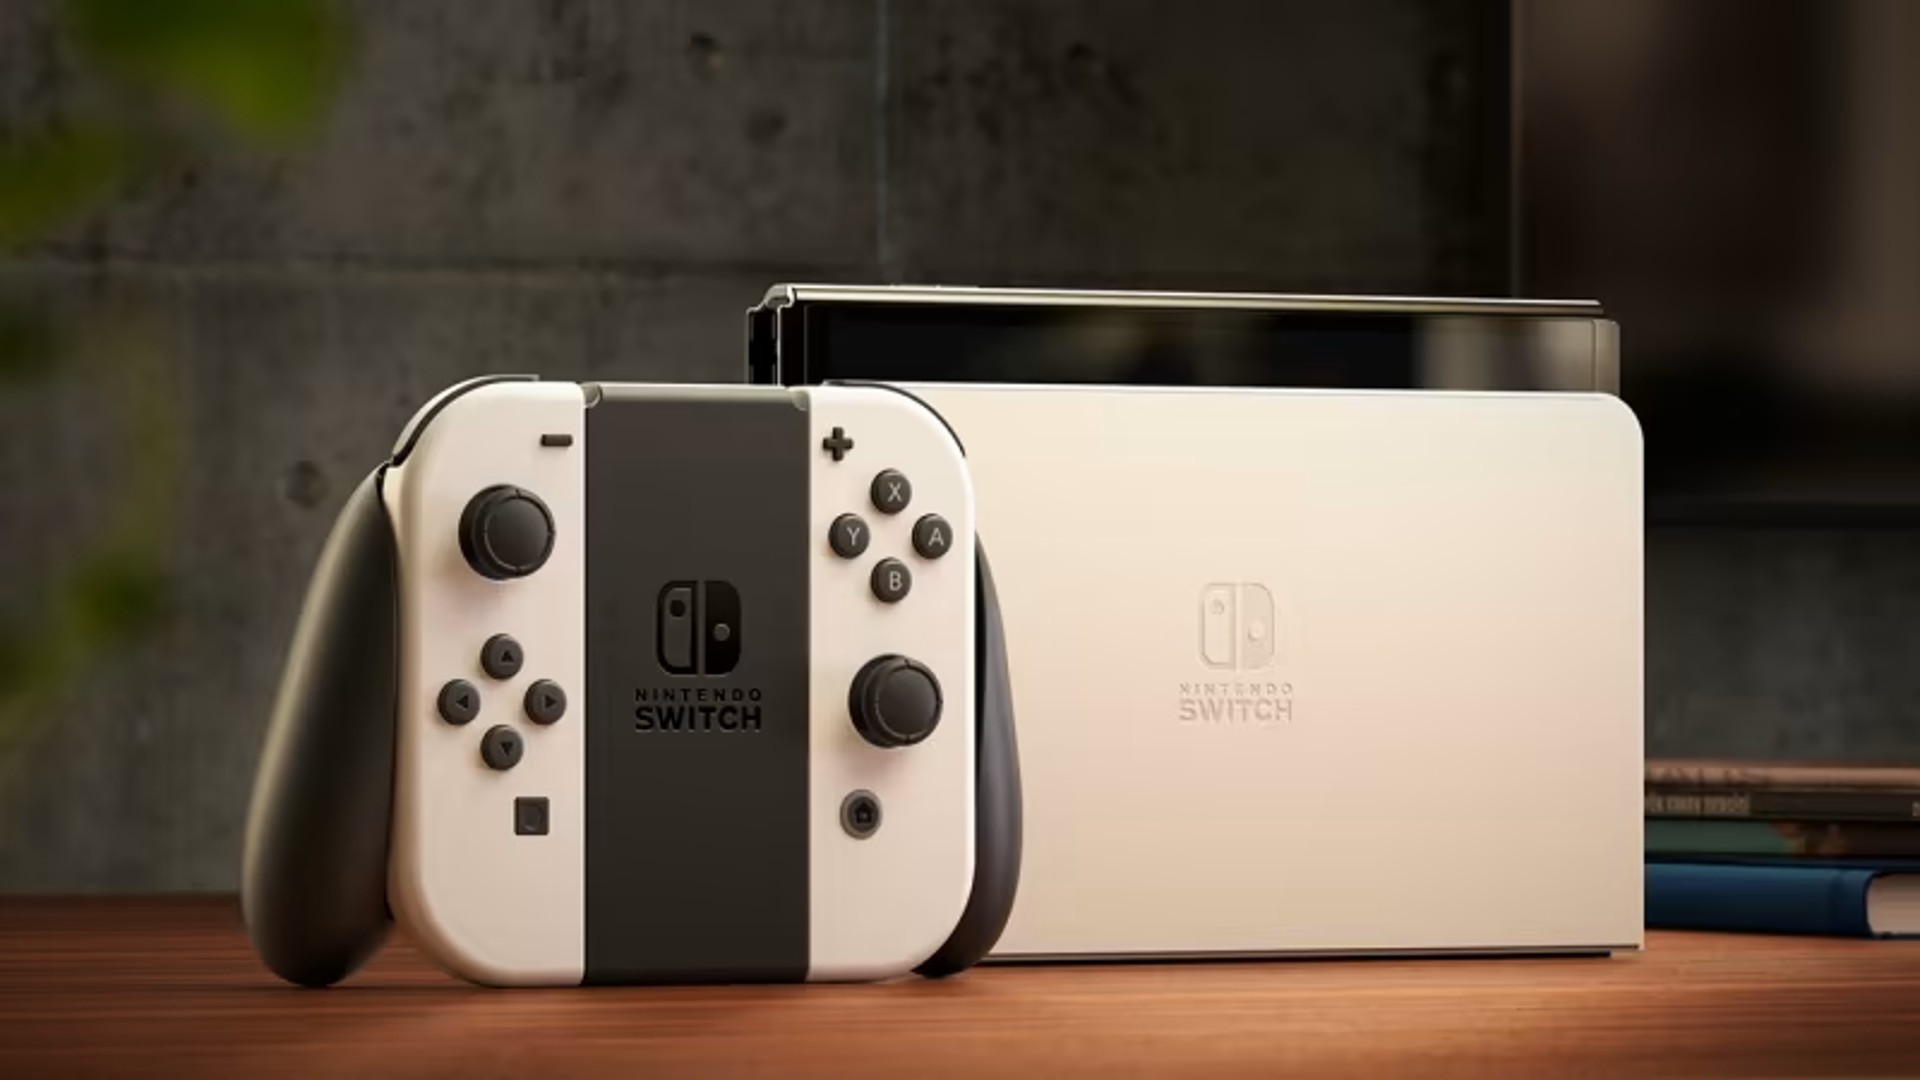 Nintendo Switch กลายเป็นเครื่องเกมสำหรับครอบครัวขายดีที่สุดแซงหน้า Nintendo Wii ในประเทศฝรั่งเศส